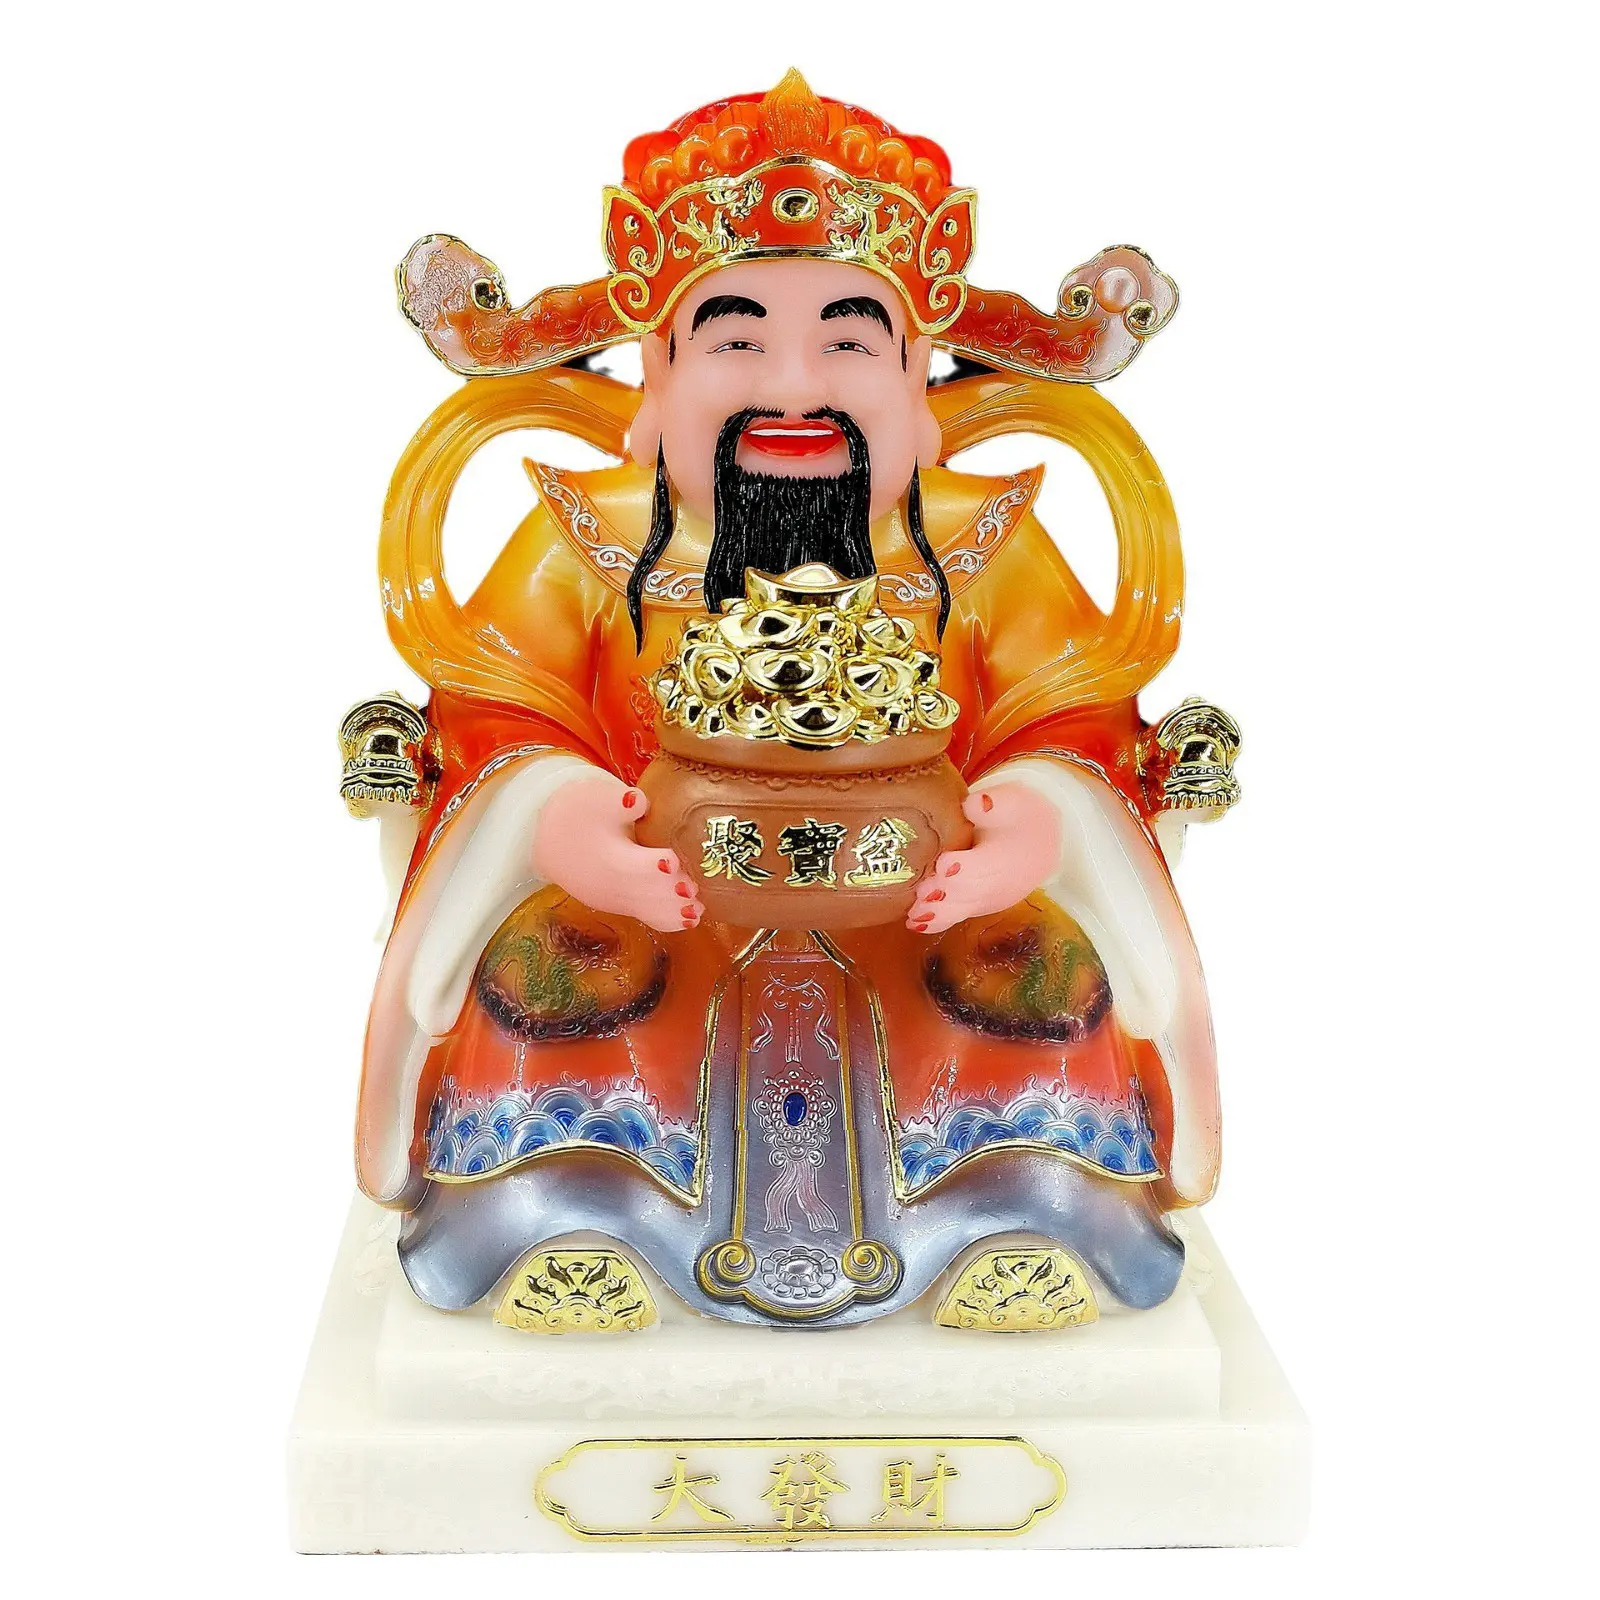 Китайская Статуя Бога, оптовая продажа, смола, Хан, Байю, Нефритовая живопись, красное пальто, статуи бога богатства, статуи Будды, украшение для дома